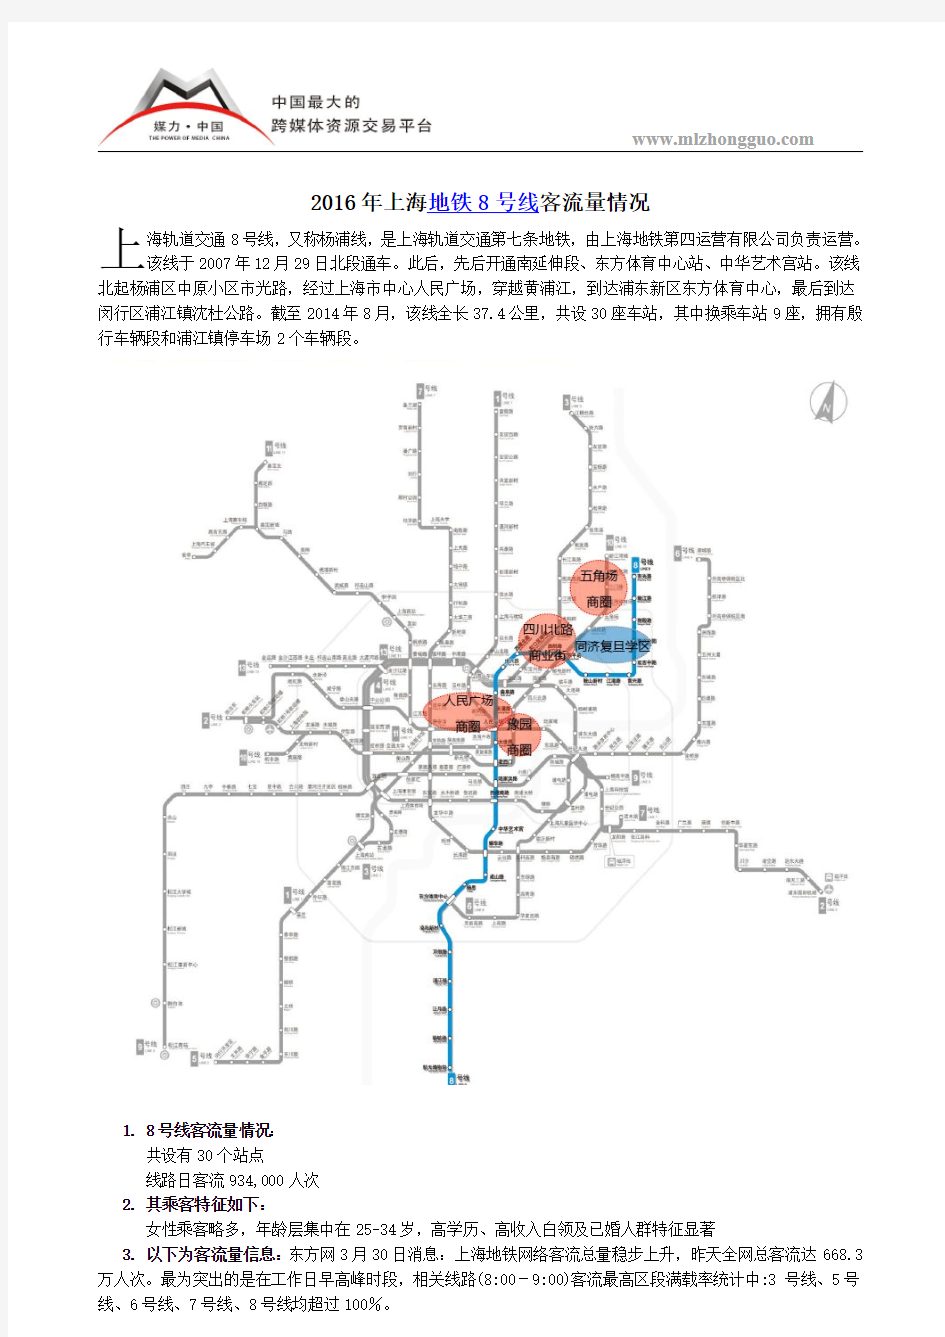 2016年上海地铁8号线客流量情况